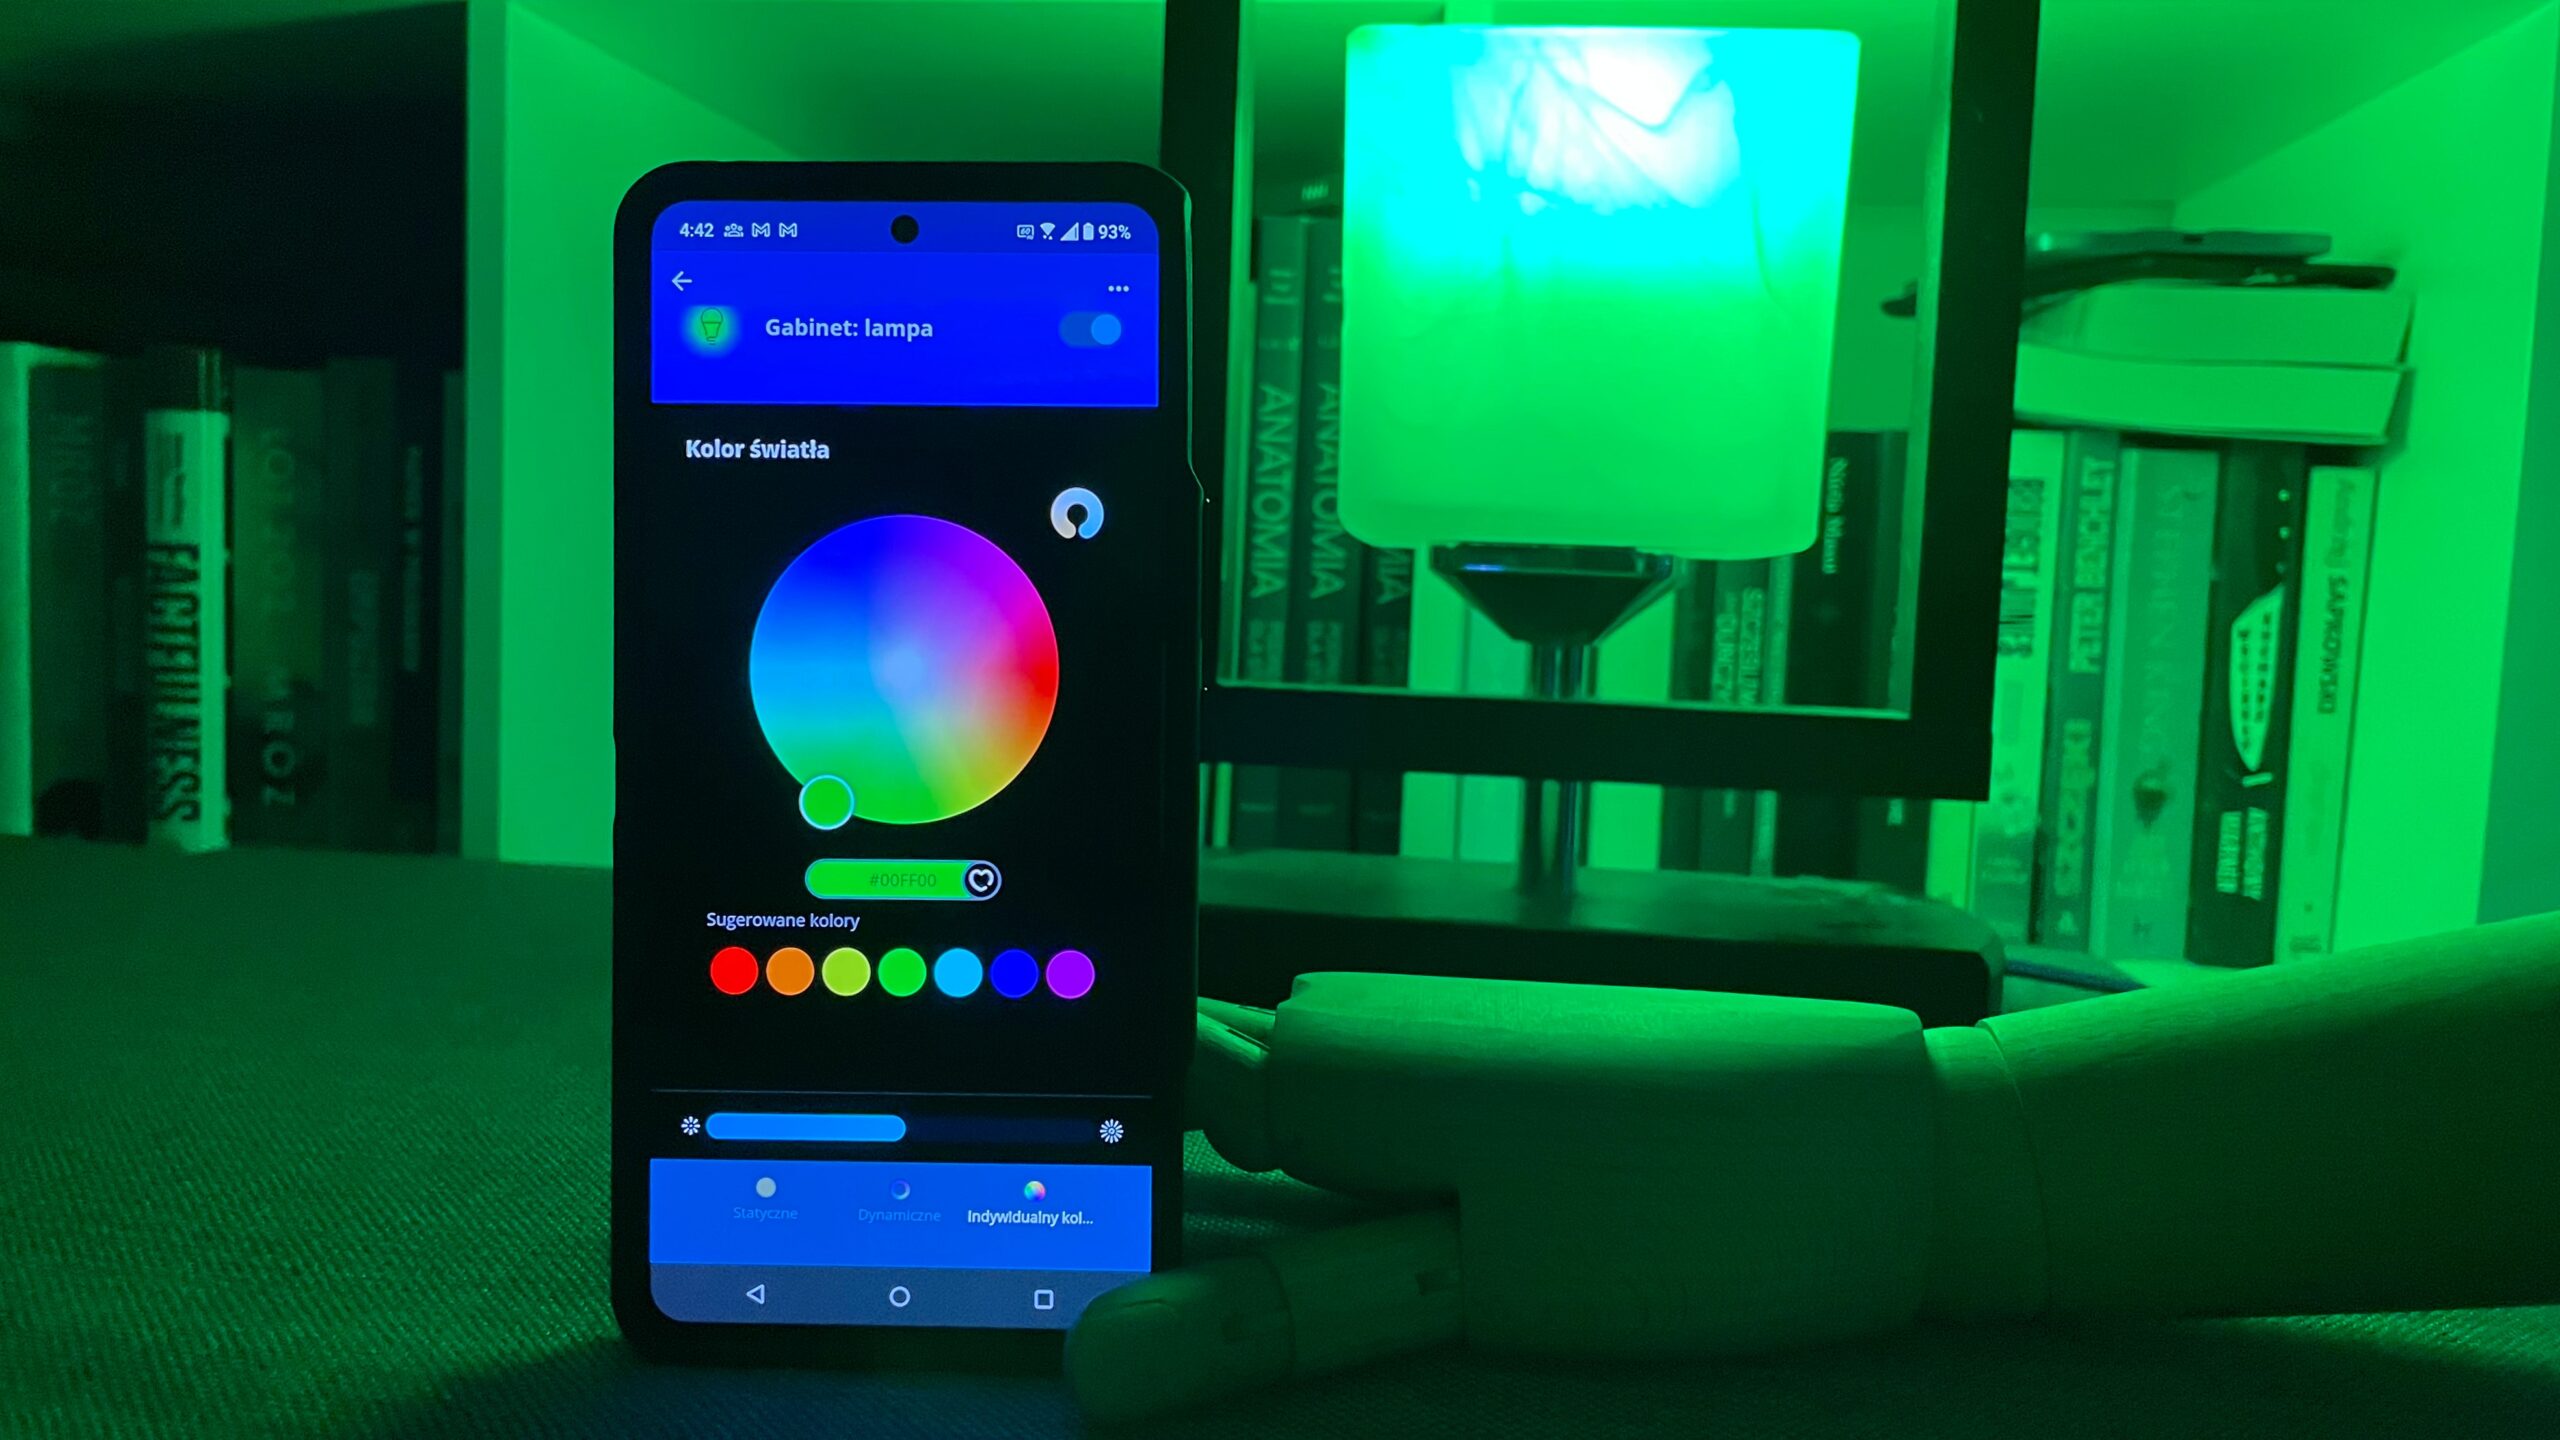 Smartfon wyświetlający aplikację do sterowania kolorowym oświetleniem w zielonym oświetleniu pokoju z półkami z książkami w tle.